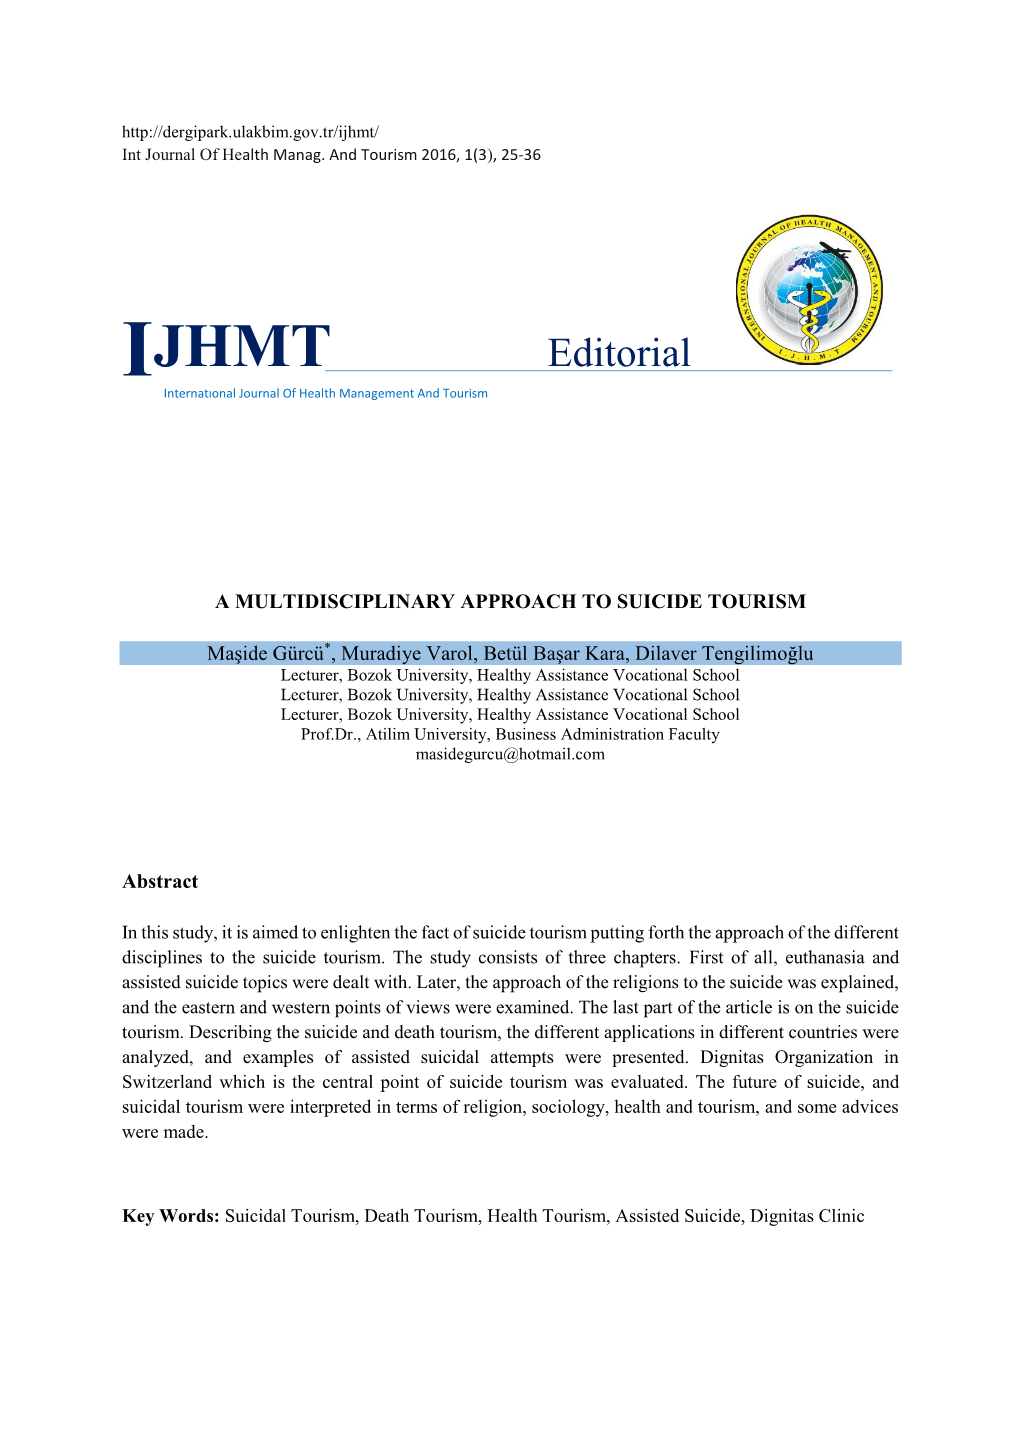 Ijhmt/ Int Journal of Health Manag